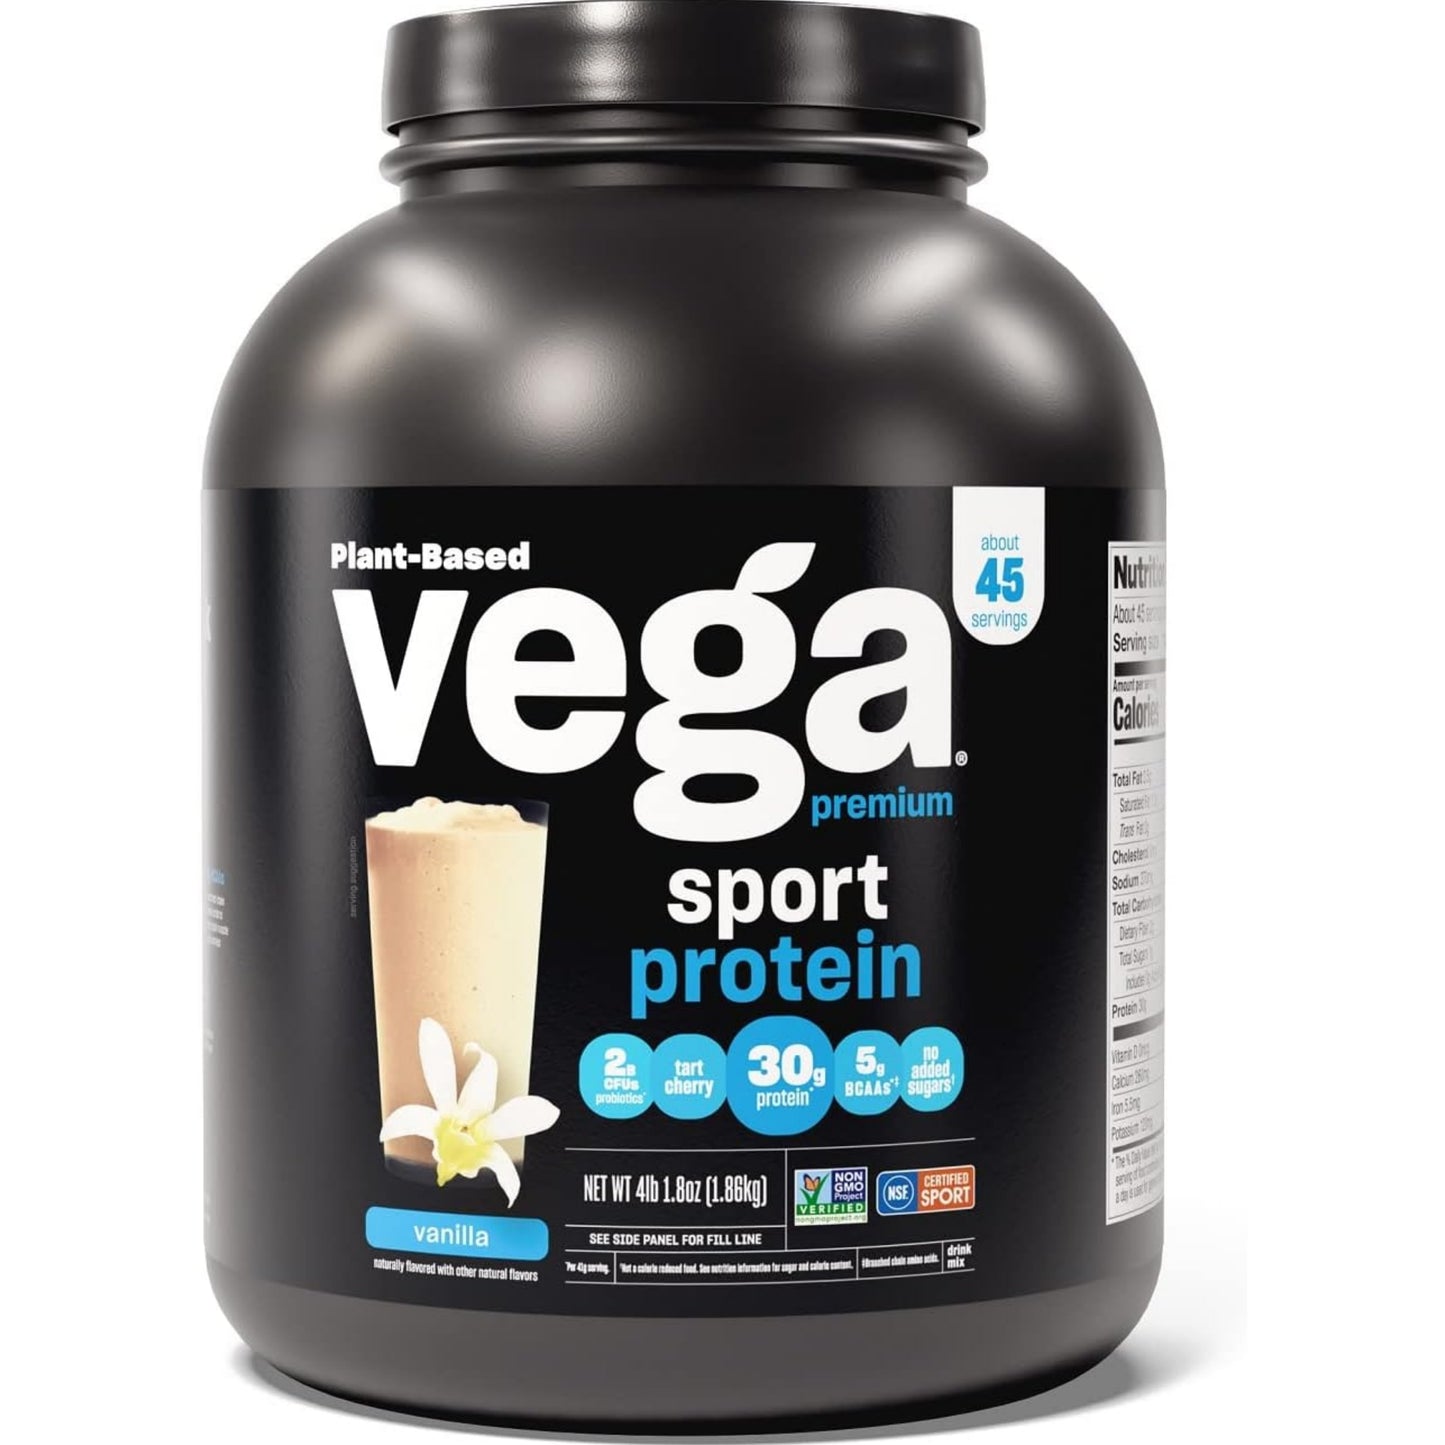 【多種口味】Vega Sport Premium Vegan Protein Powder 高級素食乳清蛋白粉